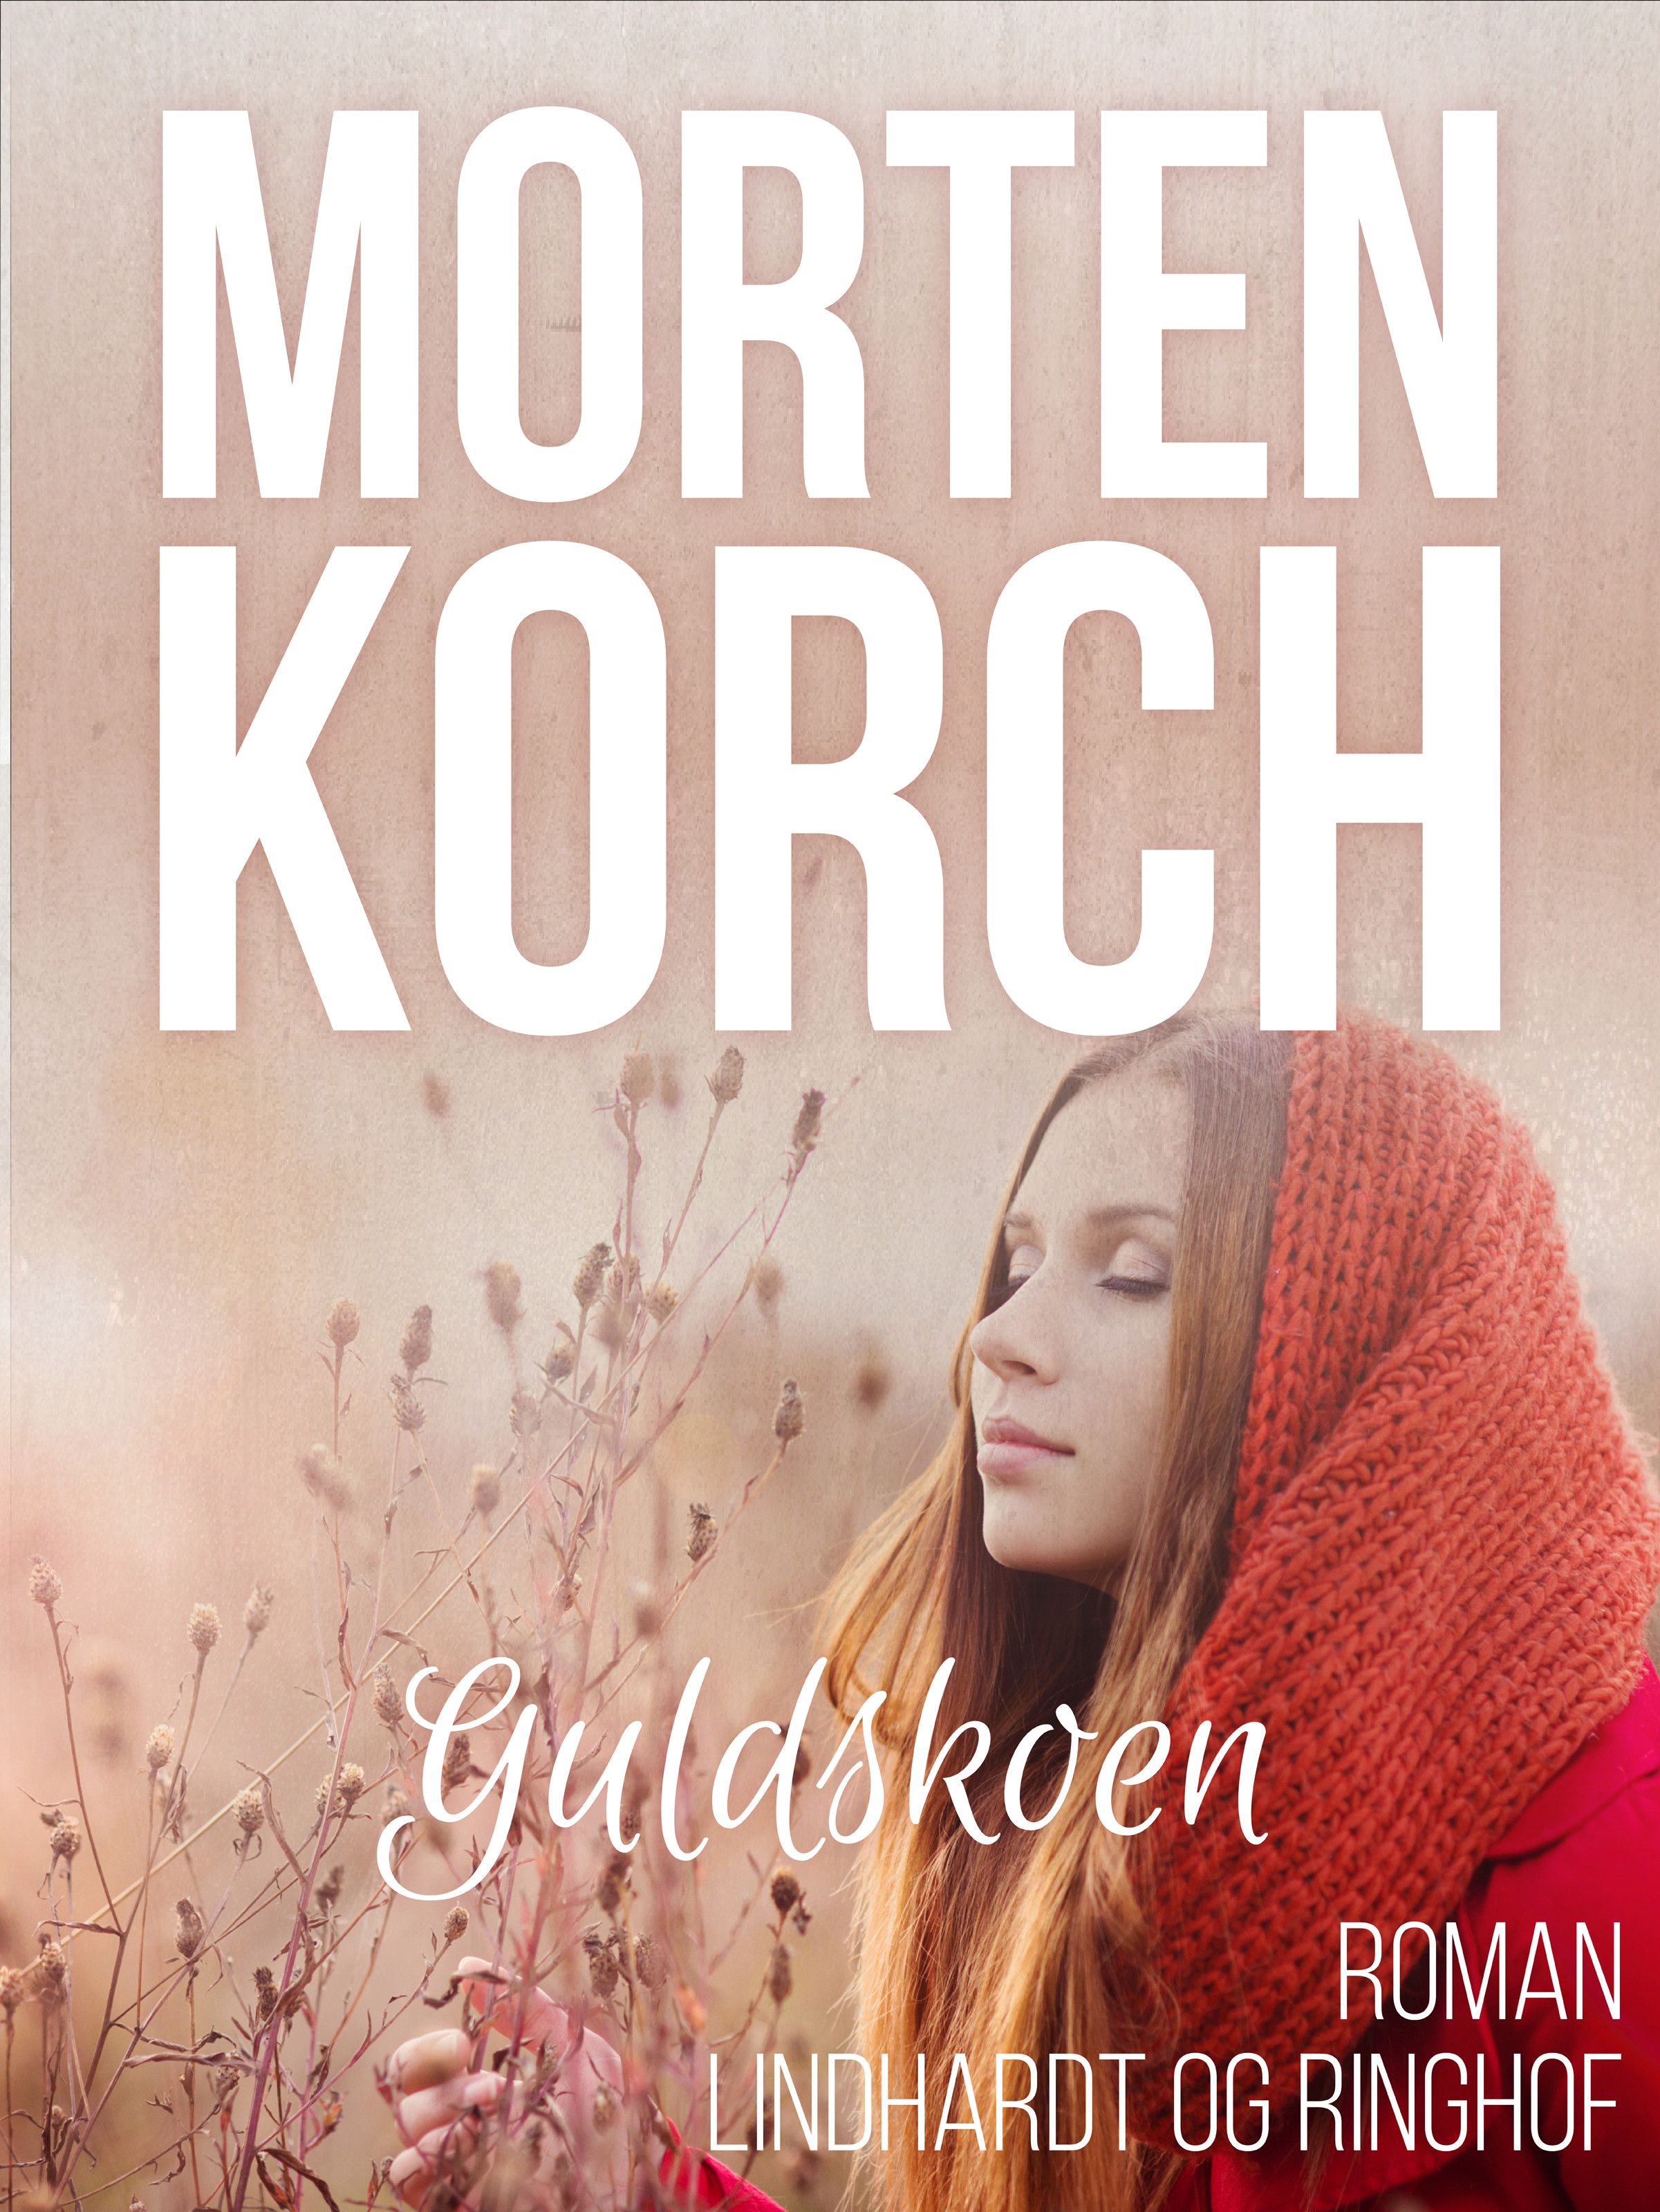 Guldskoen, audiobook by Morten Korch